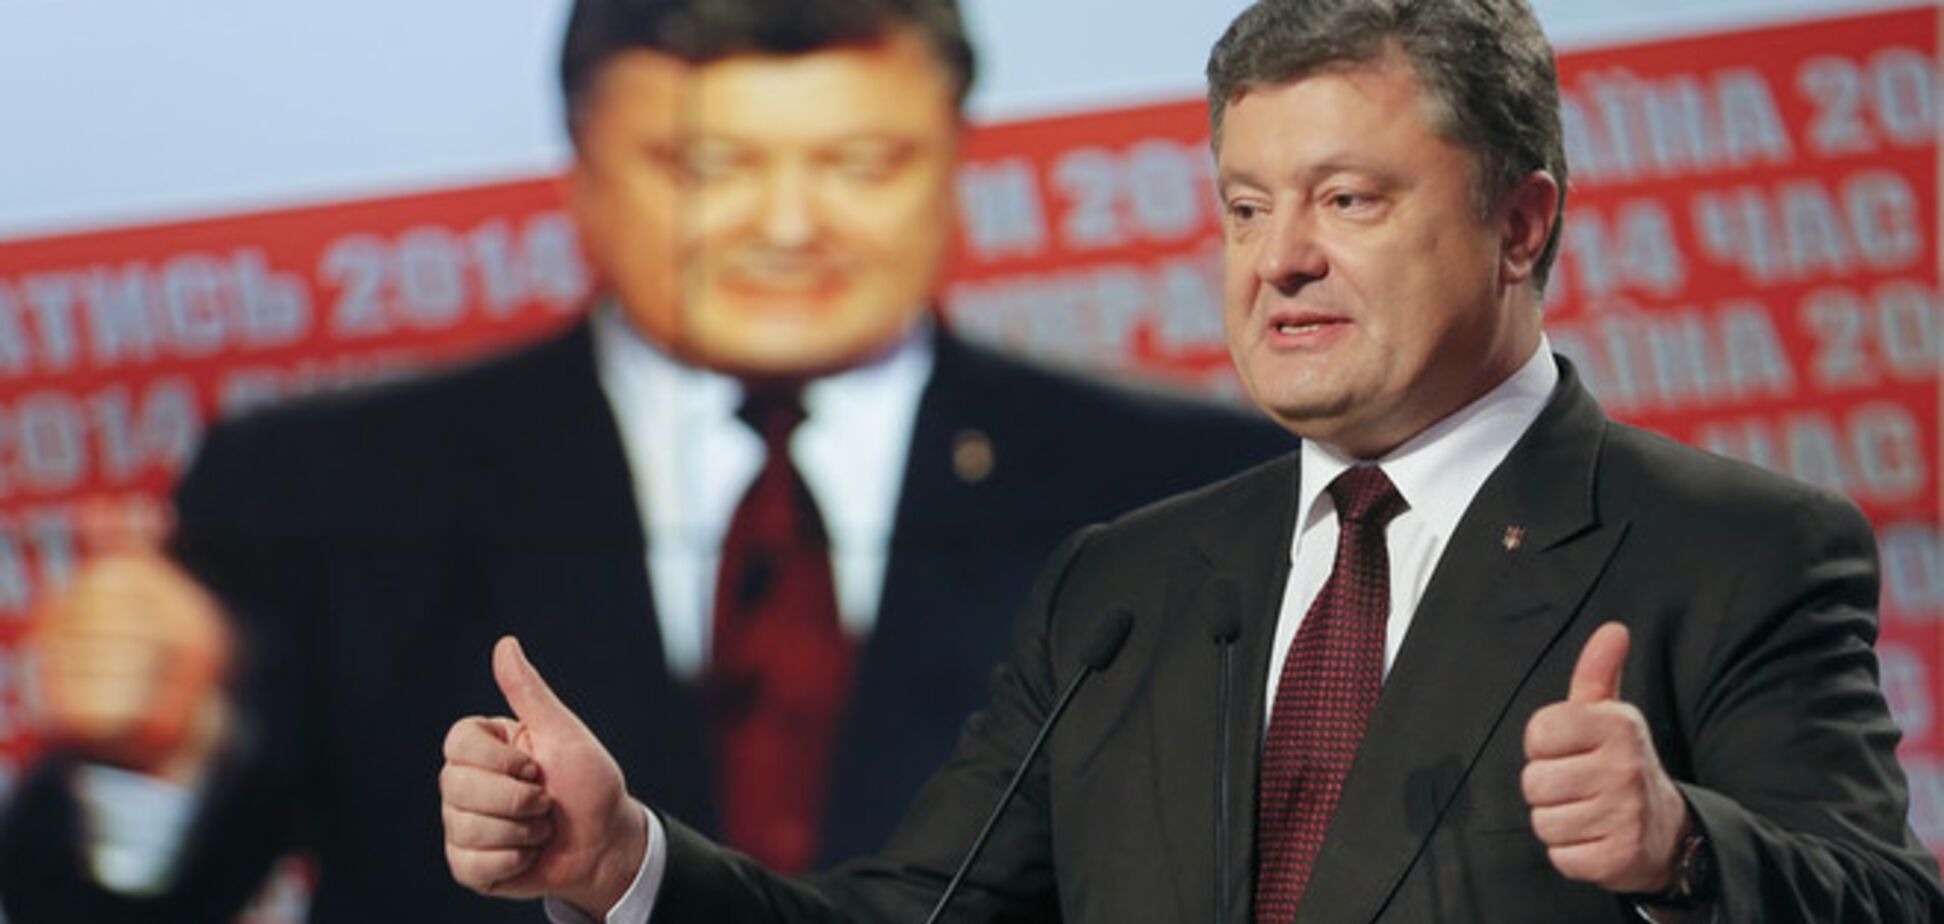 Порошенко начал формировать коалицию: переговорил с Яценюком и Садовым